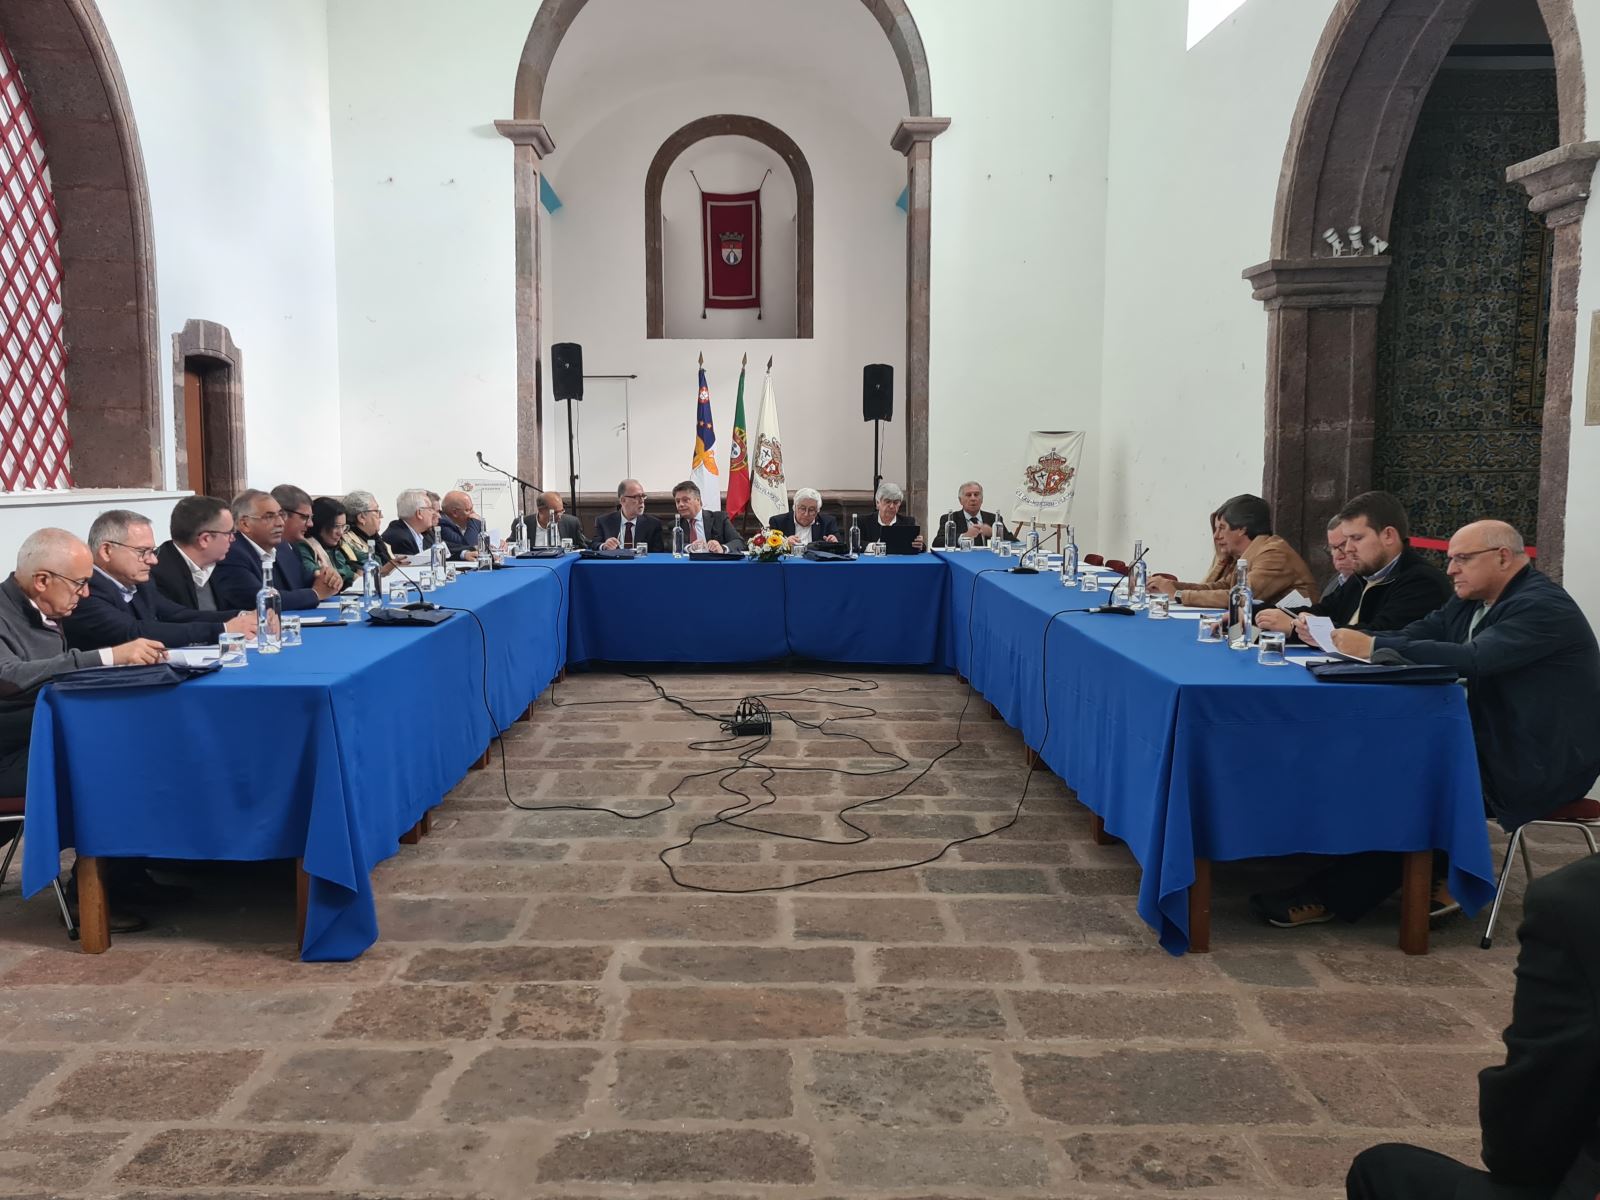 URMA | Misericórdias dos Açores reunidas em Santa Maria